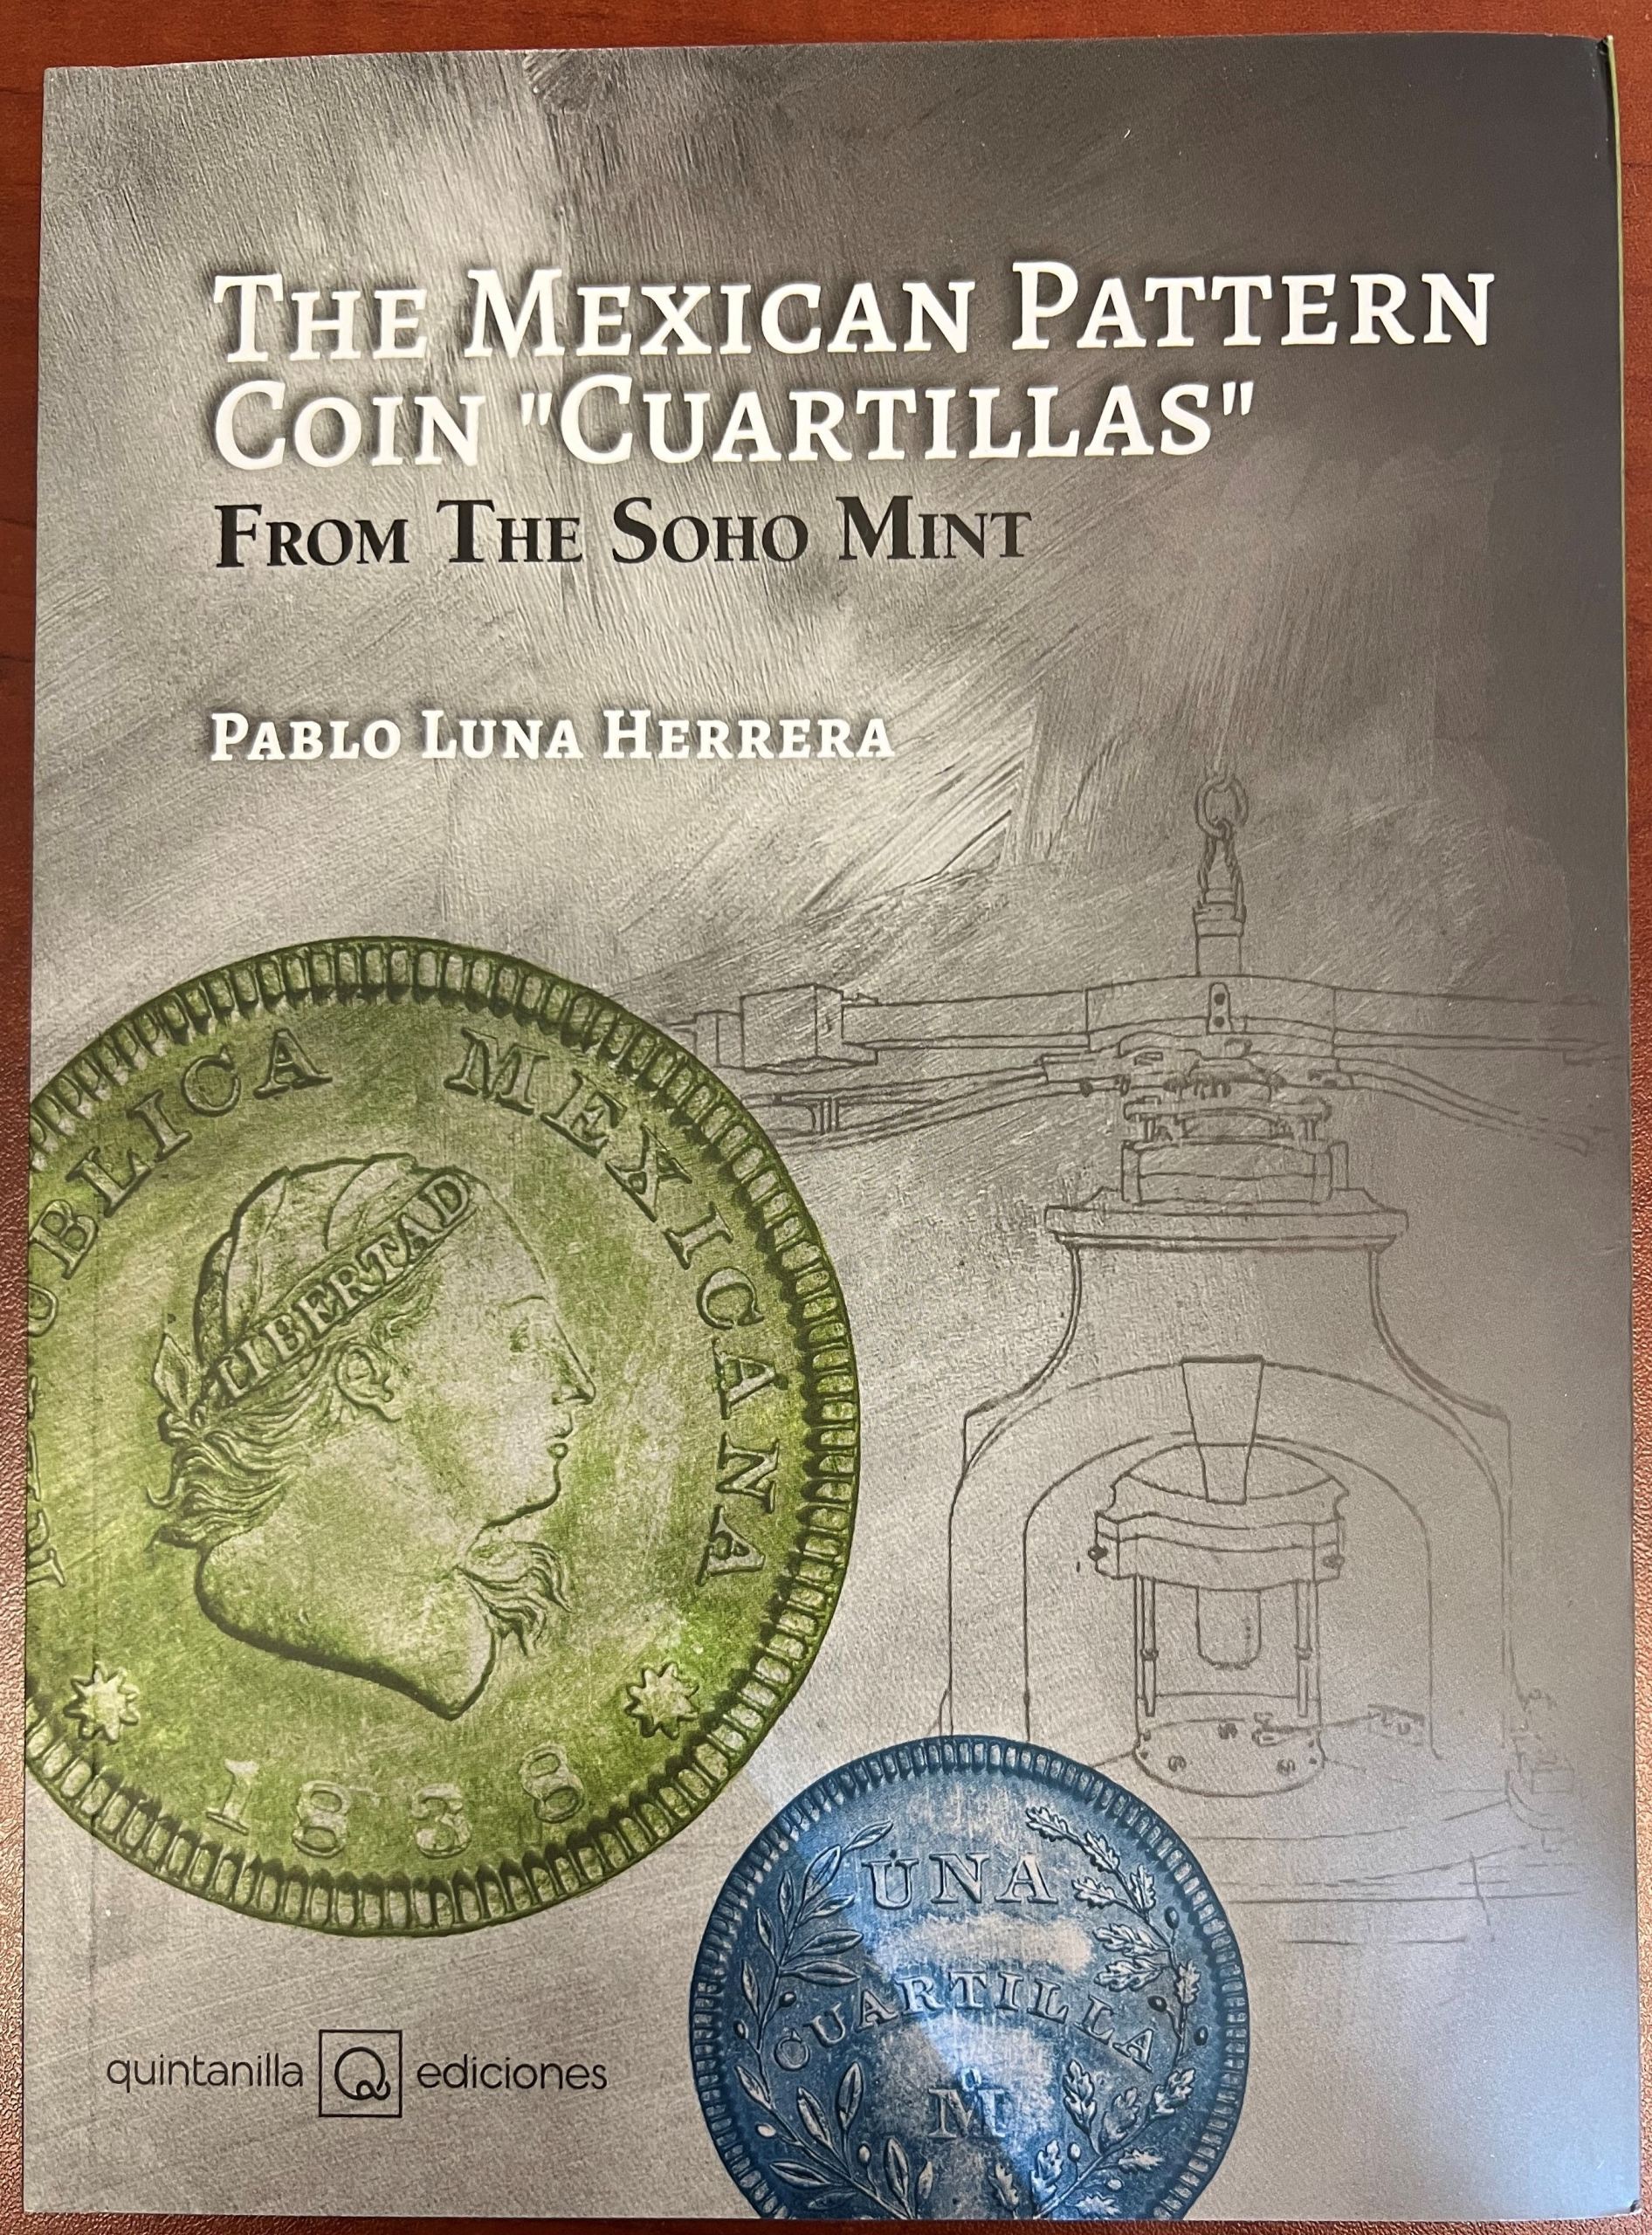 The Mexican Pattern Coin "Cuartillas"